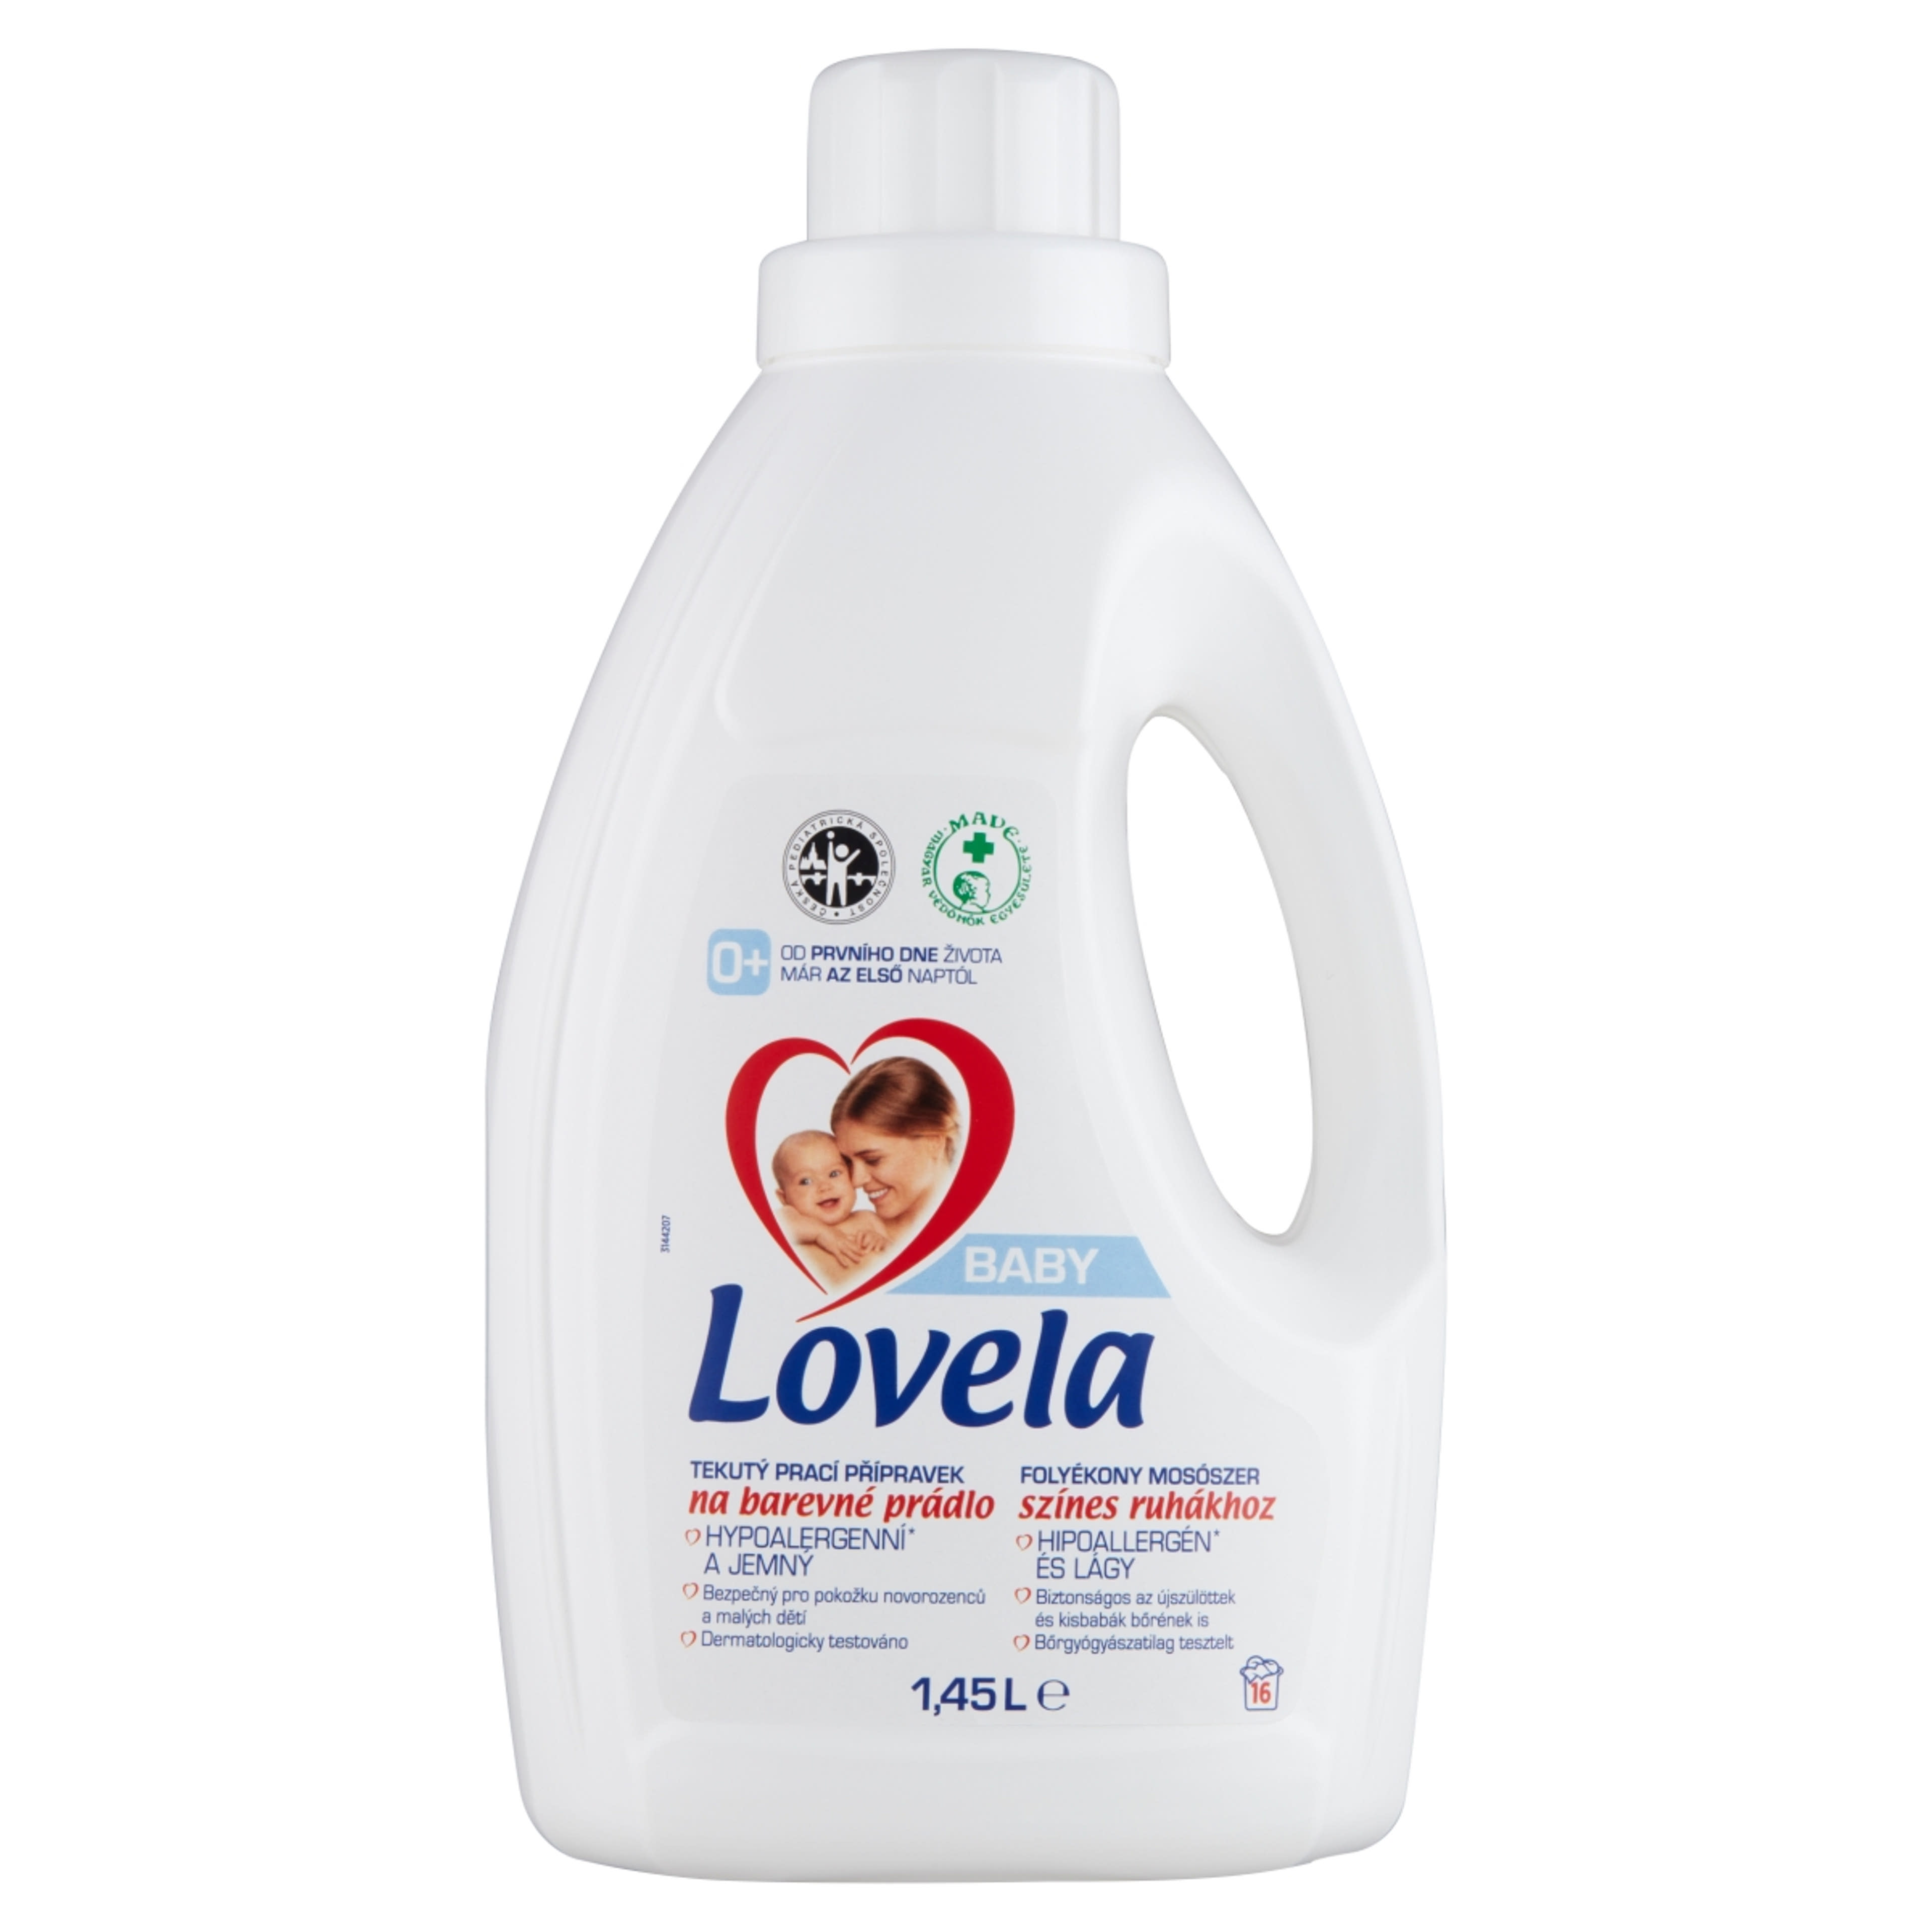 Lovela Baby folyékony mosószer színes ruhákhoz - 1450 ml-1